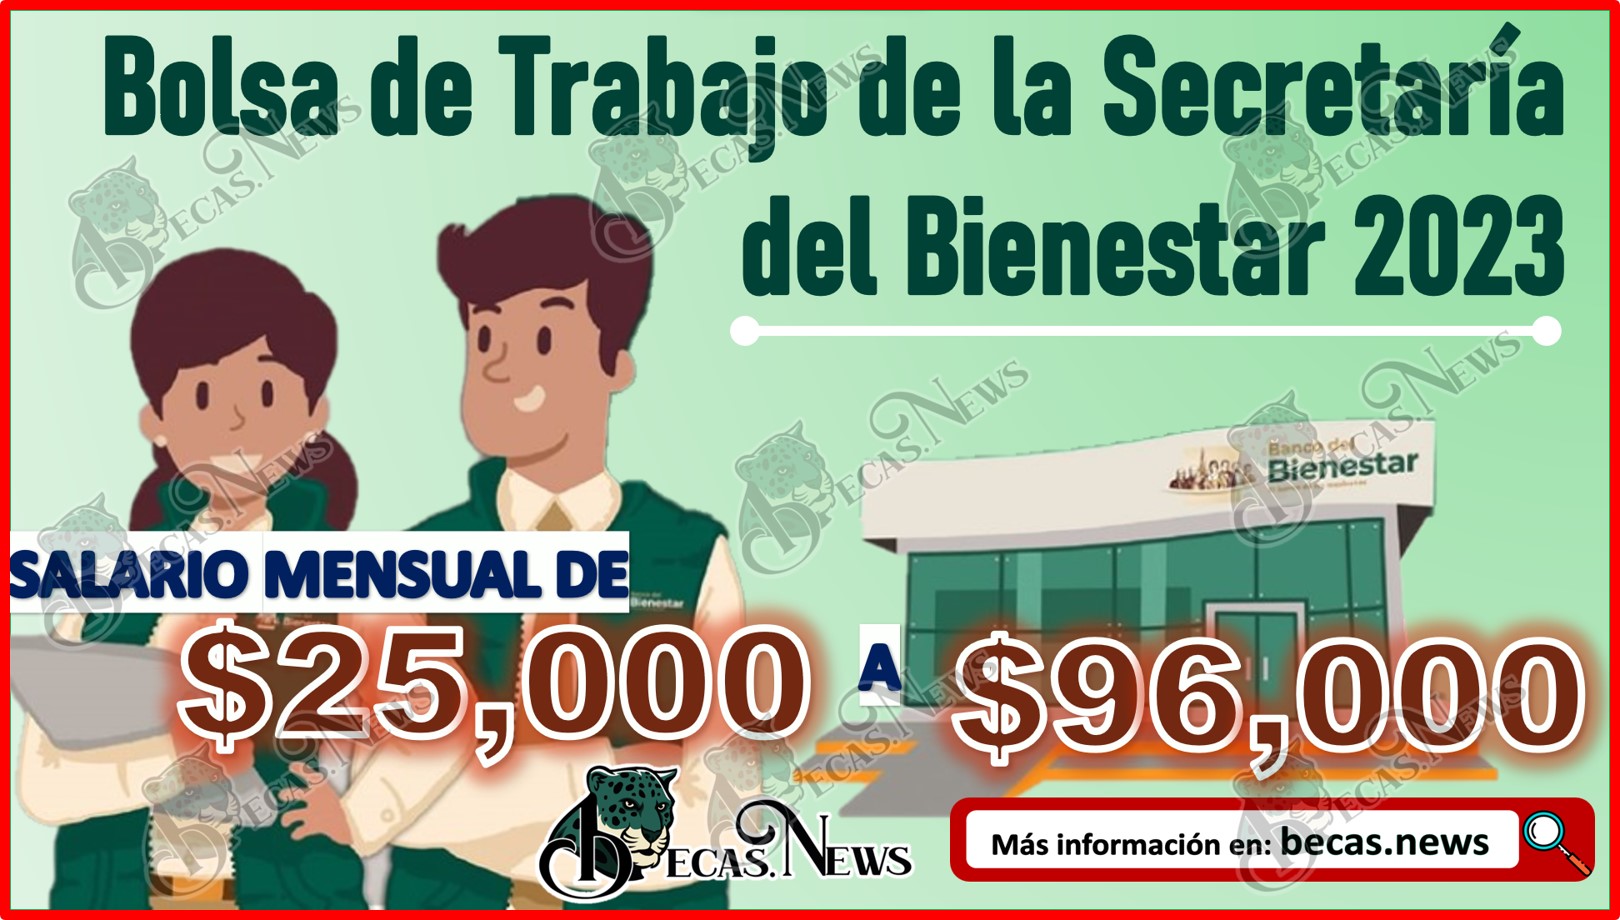 Bolsa de Trabajo de la Secretaría del Bienestar 2023 | ¡Gana hasta $96, 000 pesos!